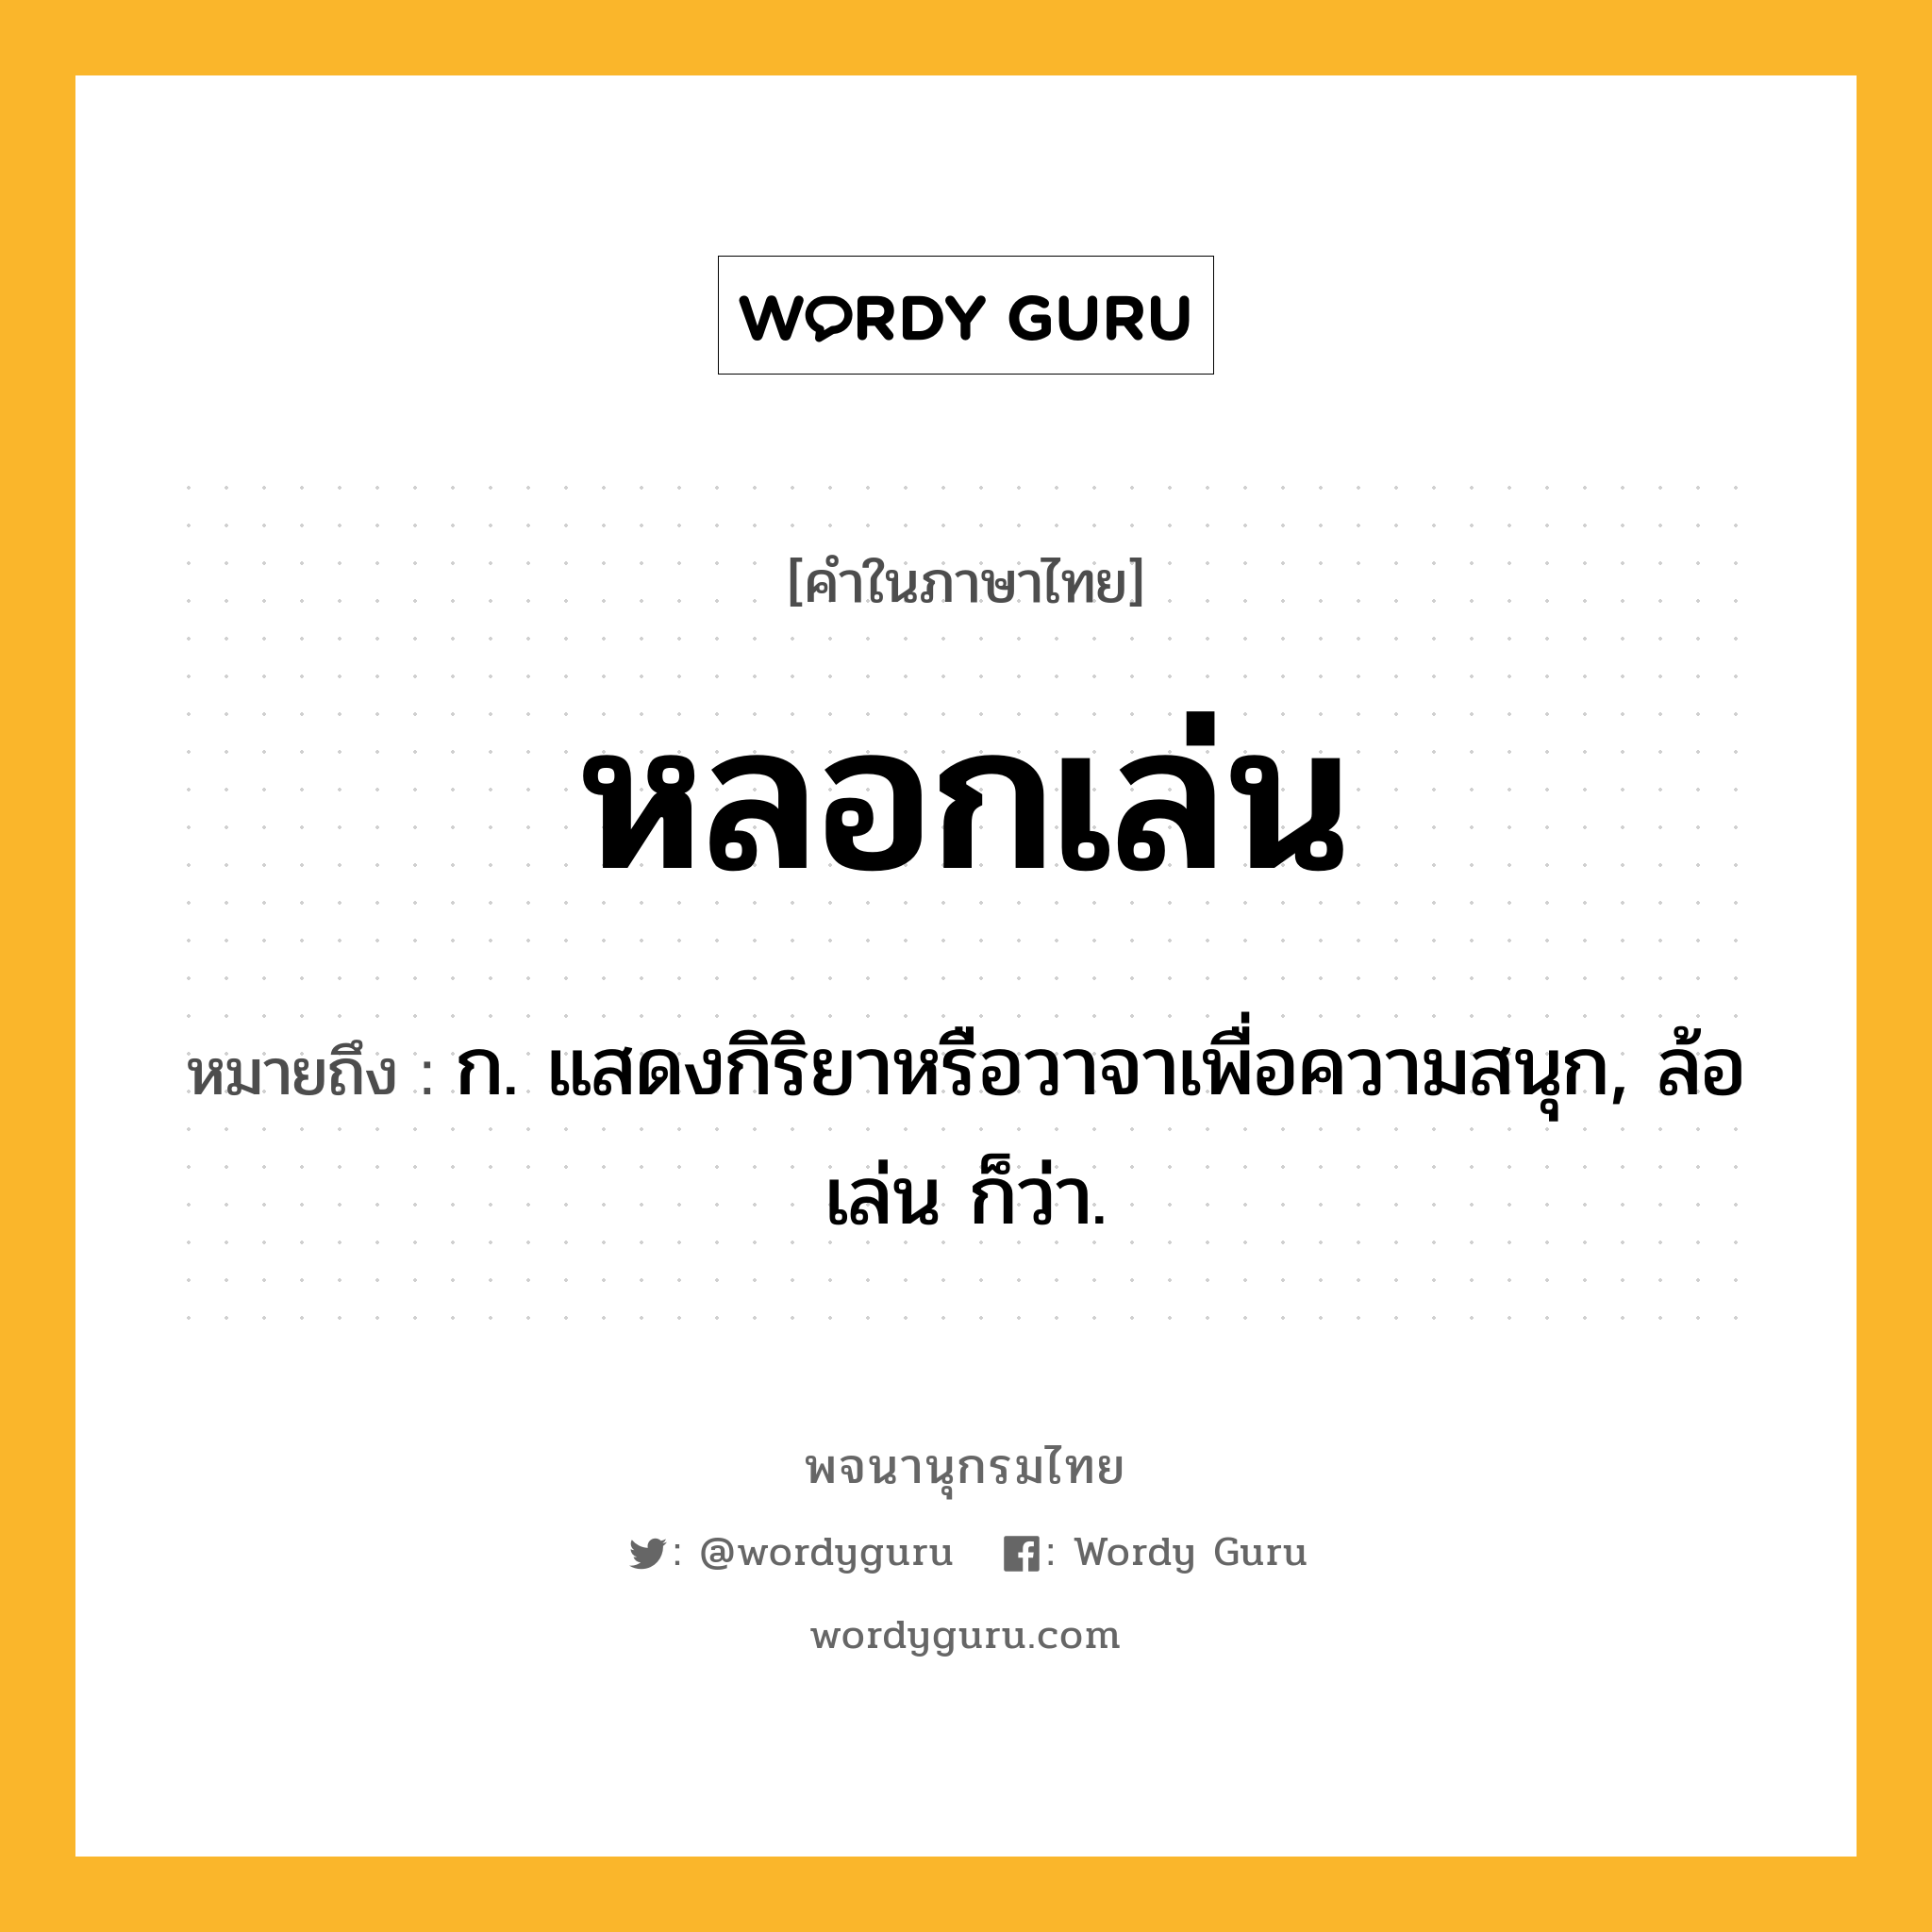 หลอกเล่น ความหมาย หมายถึงอะไร?, คำในภาษาไทย หลอกเล่น หมายถึง ก. แสดงกิริยาหรือวาจาเพื่อความสนุก, ล้อเล่น ก็ว่า.